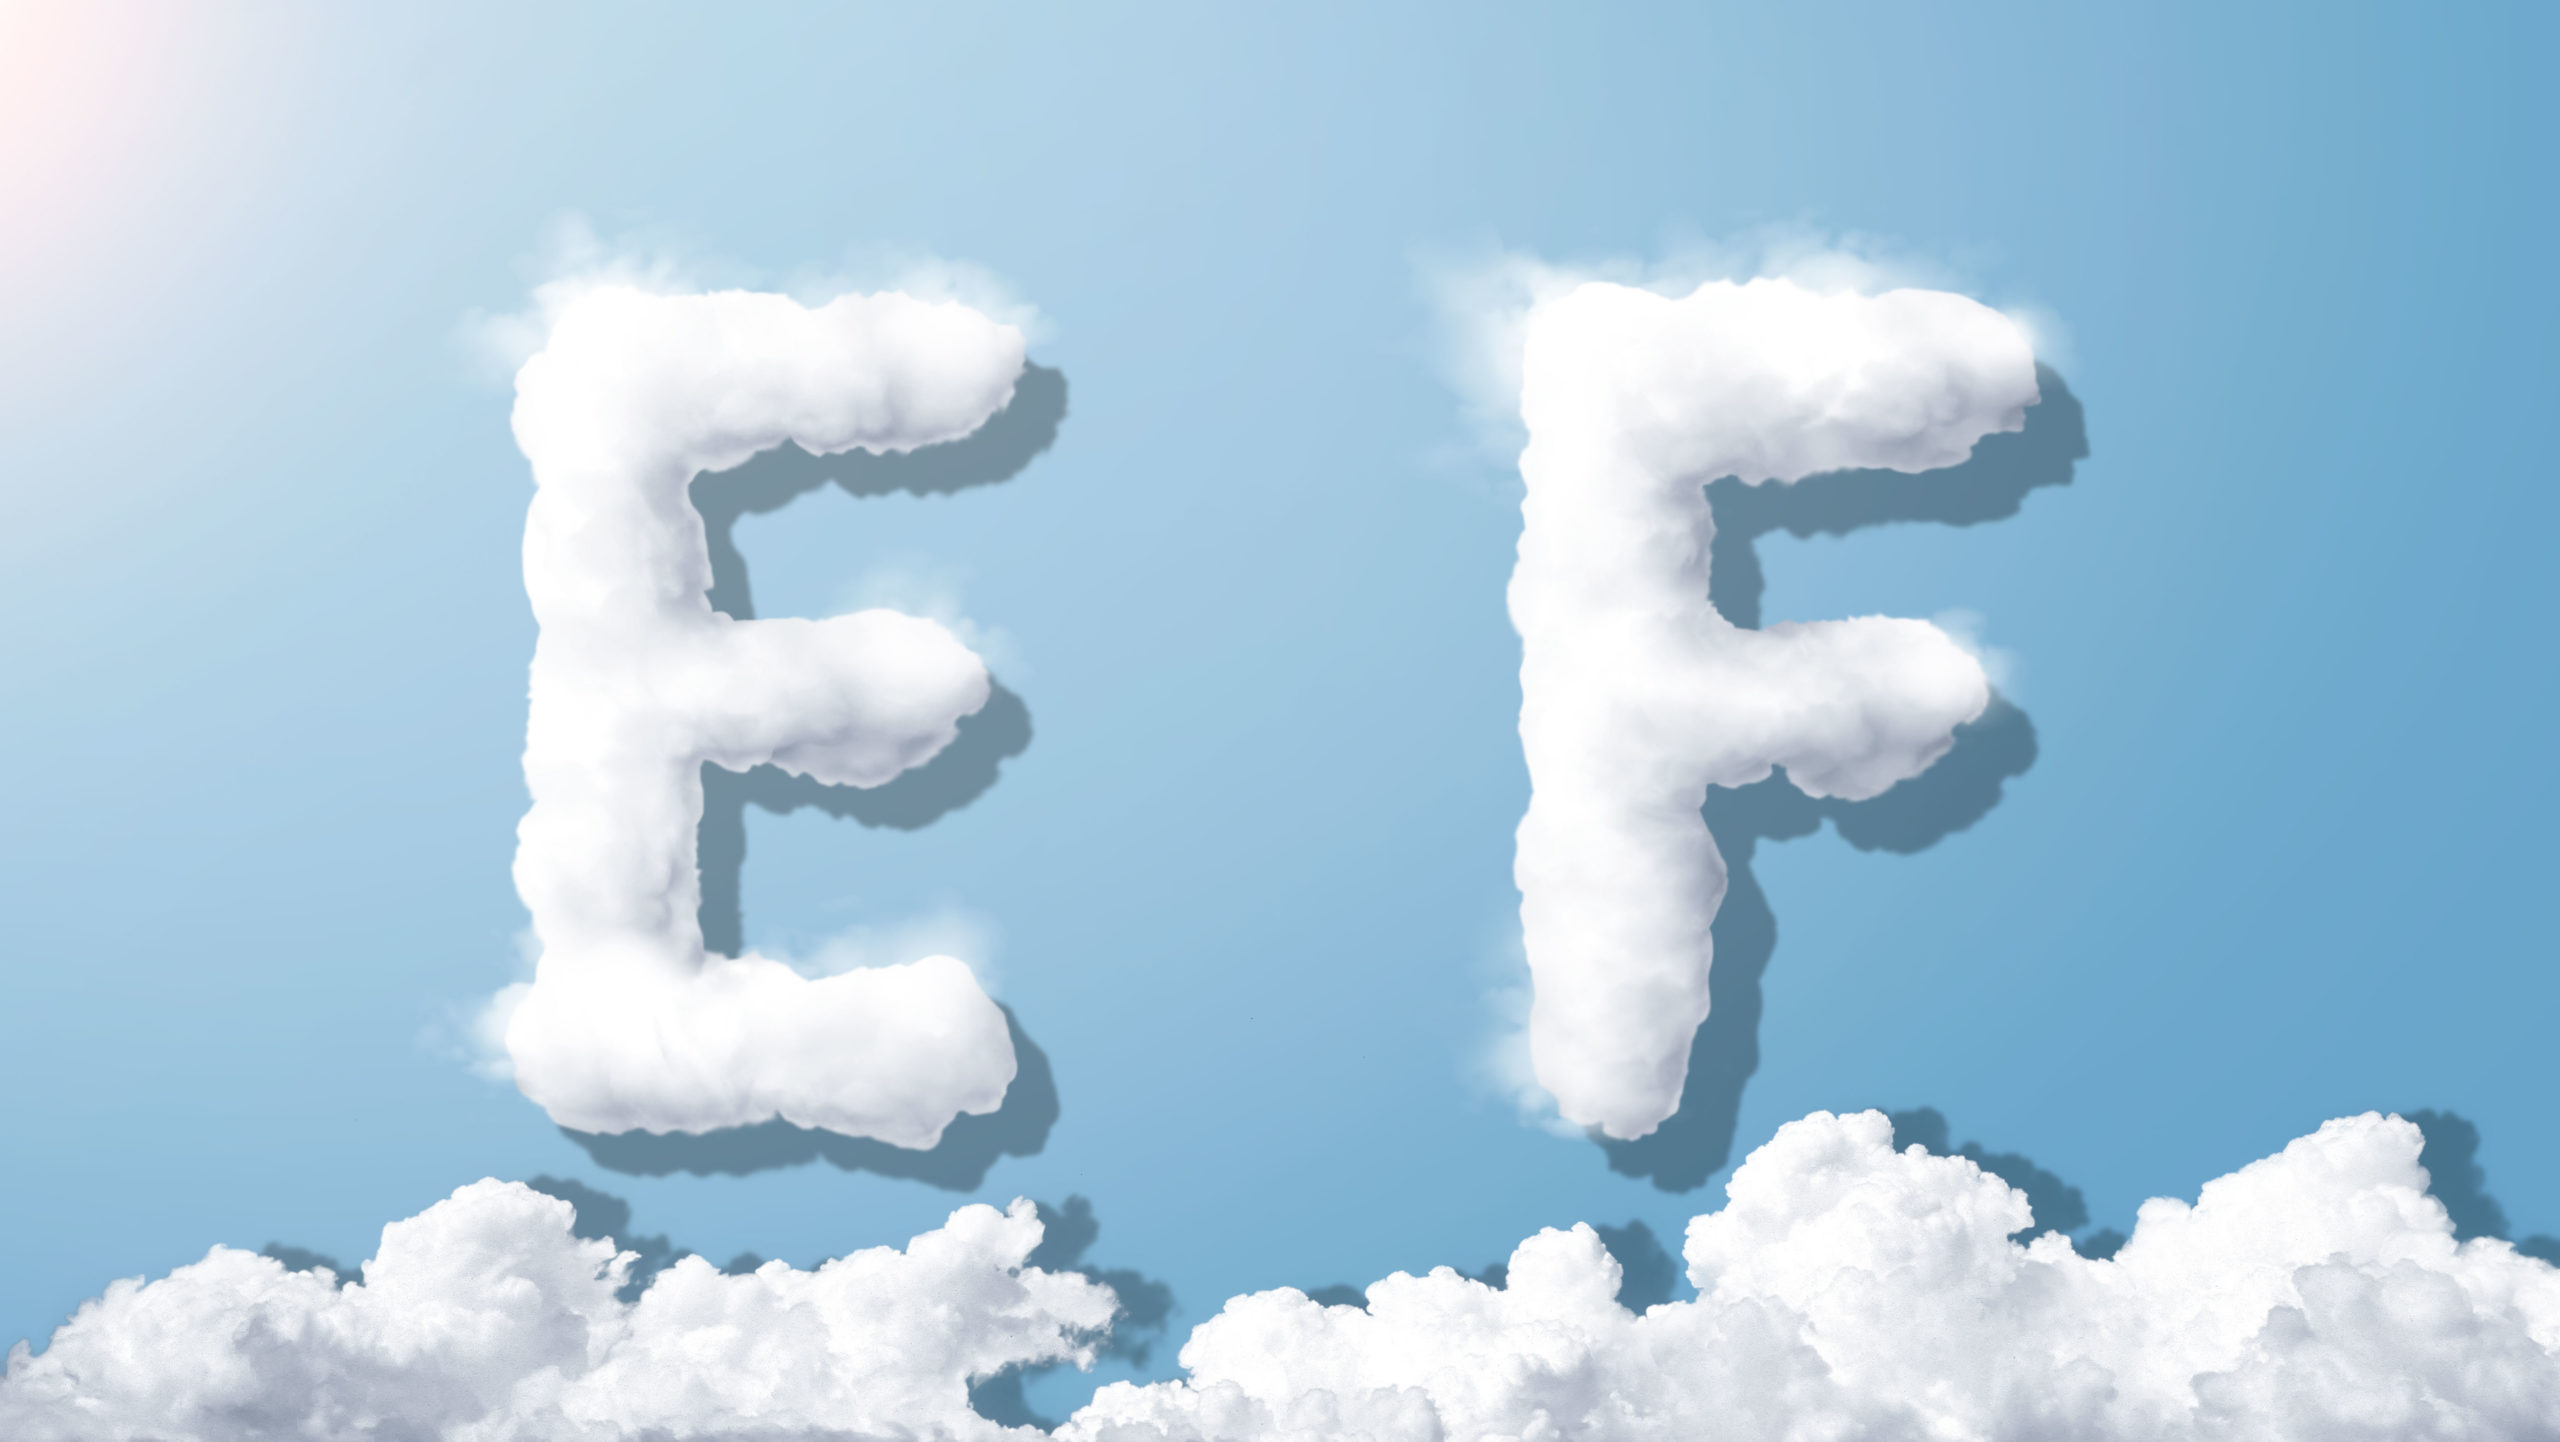 字母“EF”蓝天背景白云英文艺术字体素材中国精选PSD素材插图